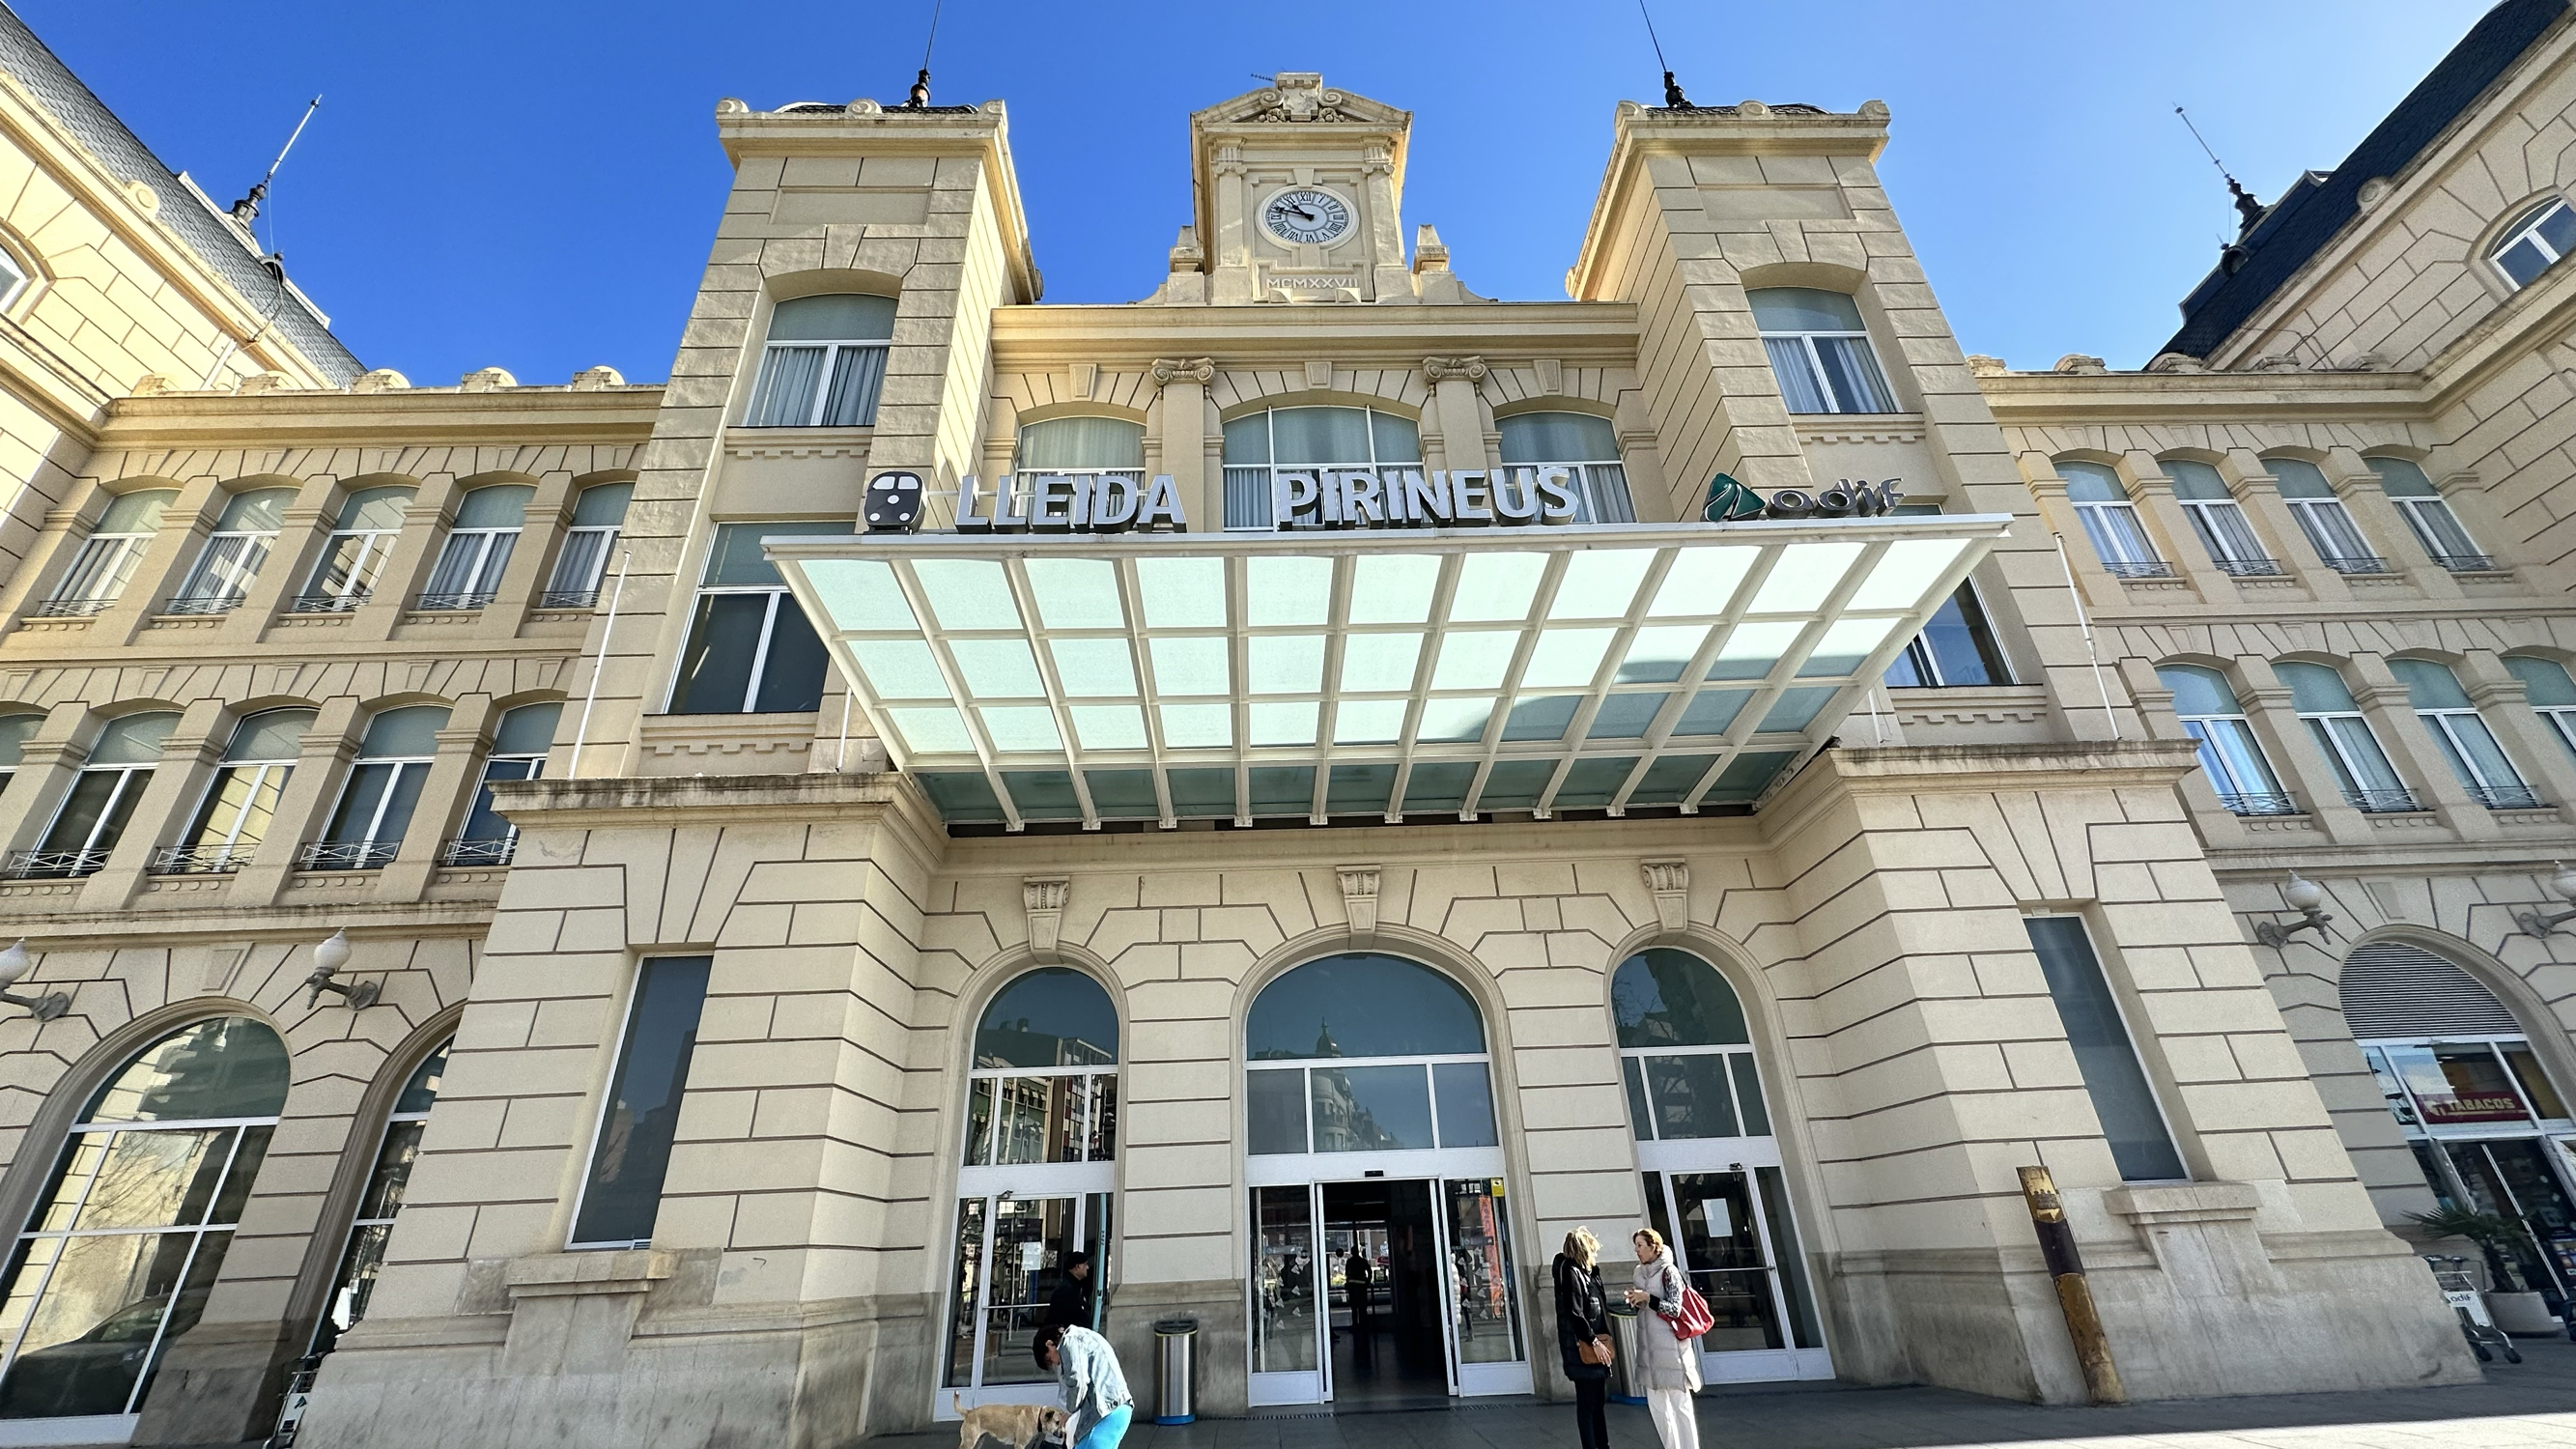 莱里达比利牛斯火车站 Estacion Pirineus